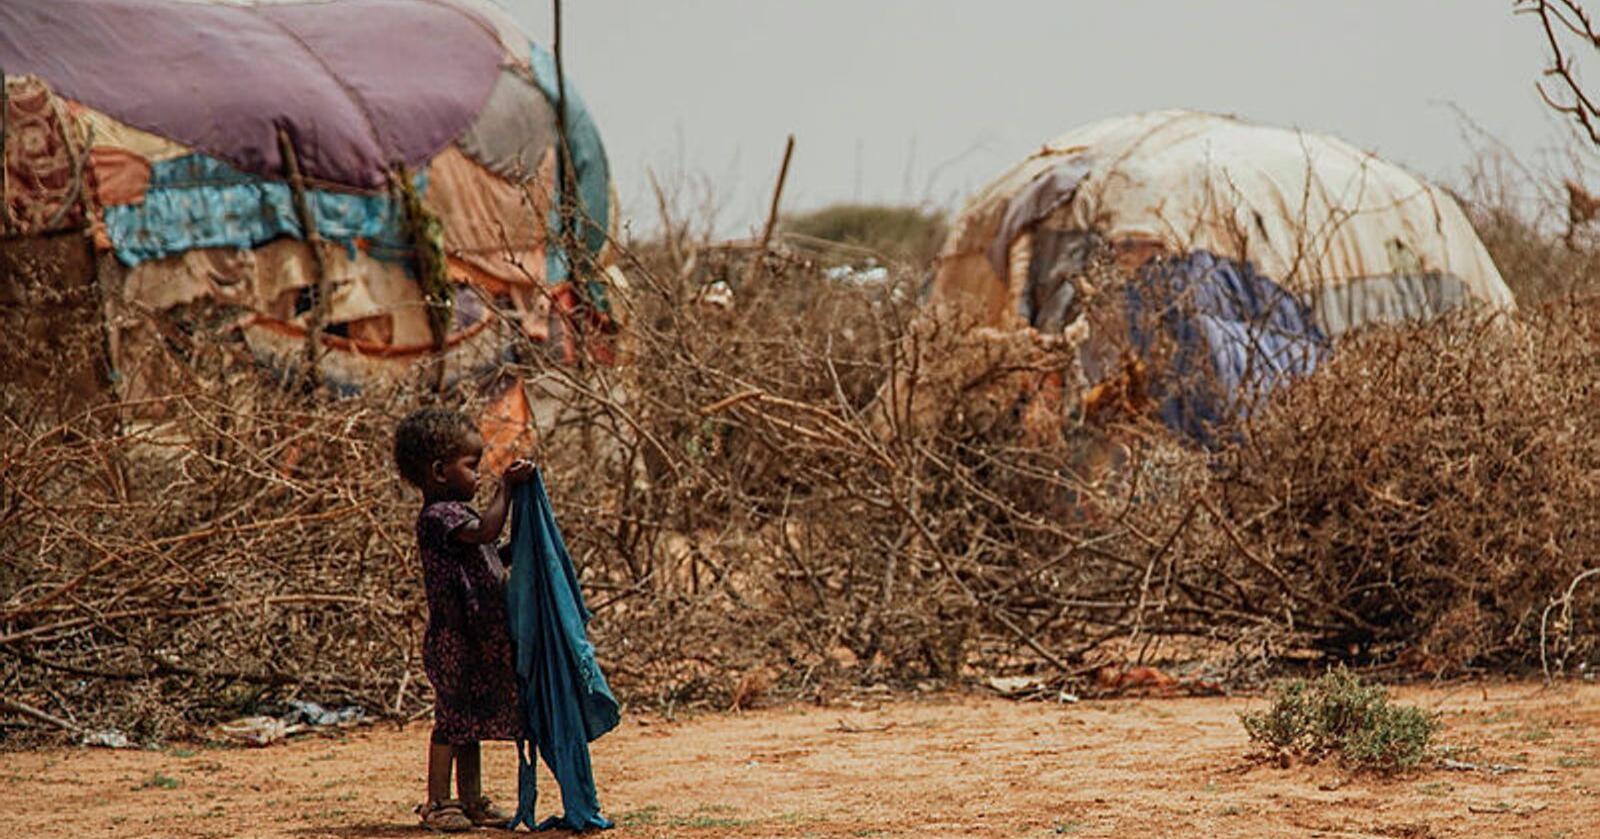 Sultpandemi: Afrikas Horn opplever den verste tørken på 40 år, og en påfølgende sultkatastrofe. Regjeringen er nødt til å konsentrere bistandsmidlene for å løse verdens sultpandemi, skriver forfatterne av kronikken. Foto: Kristoffer Nyborg/Utviklingsfondet